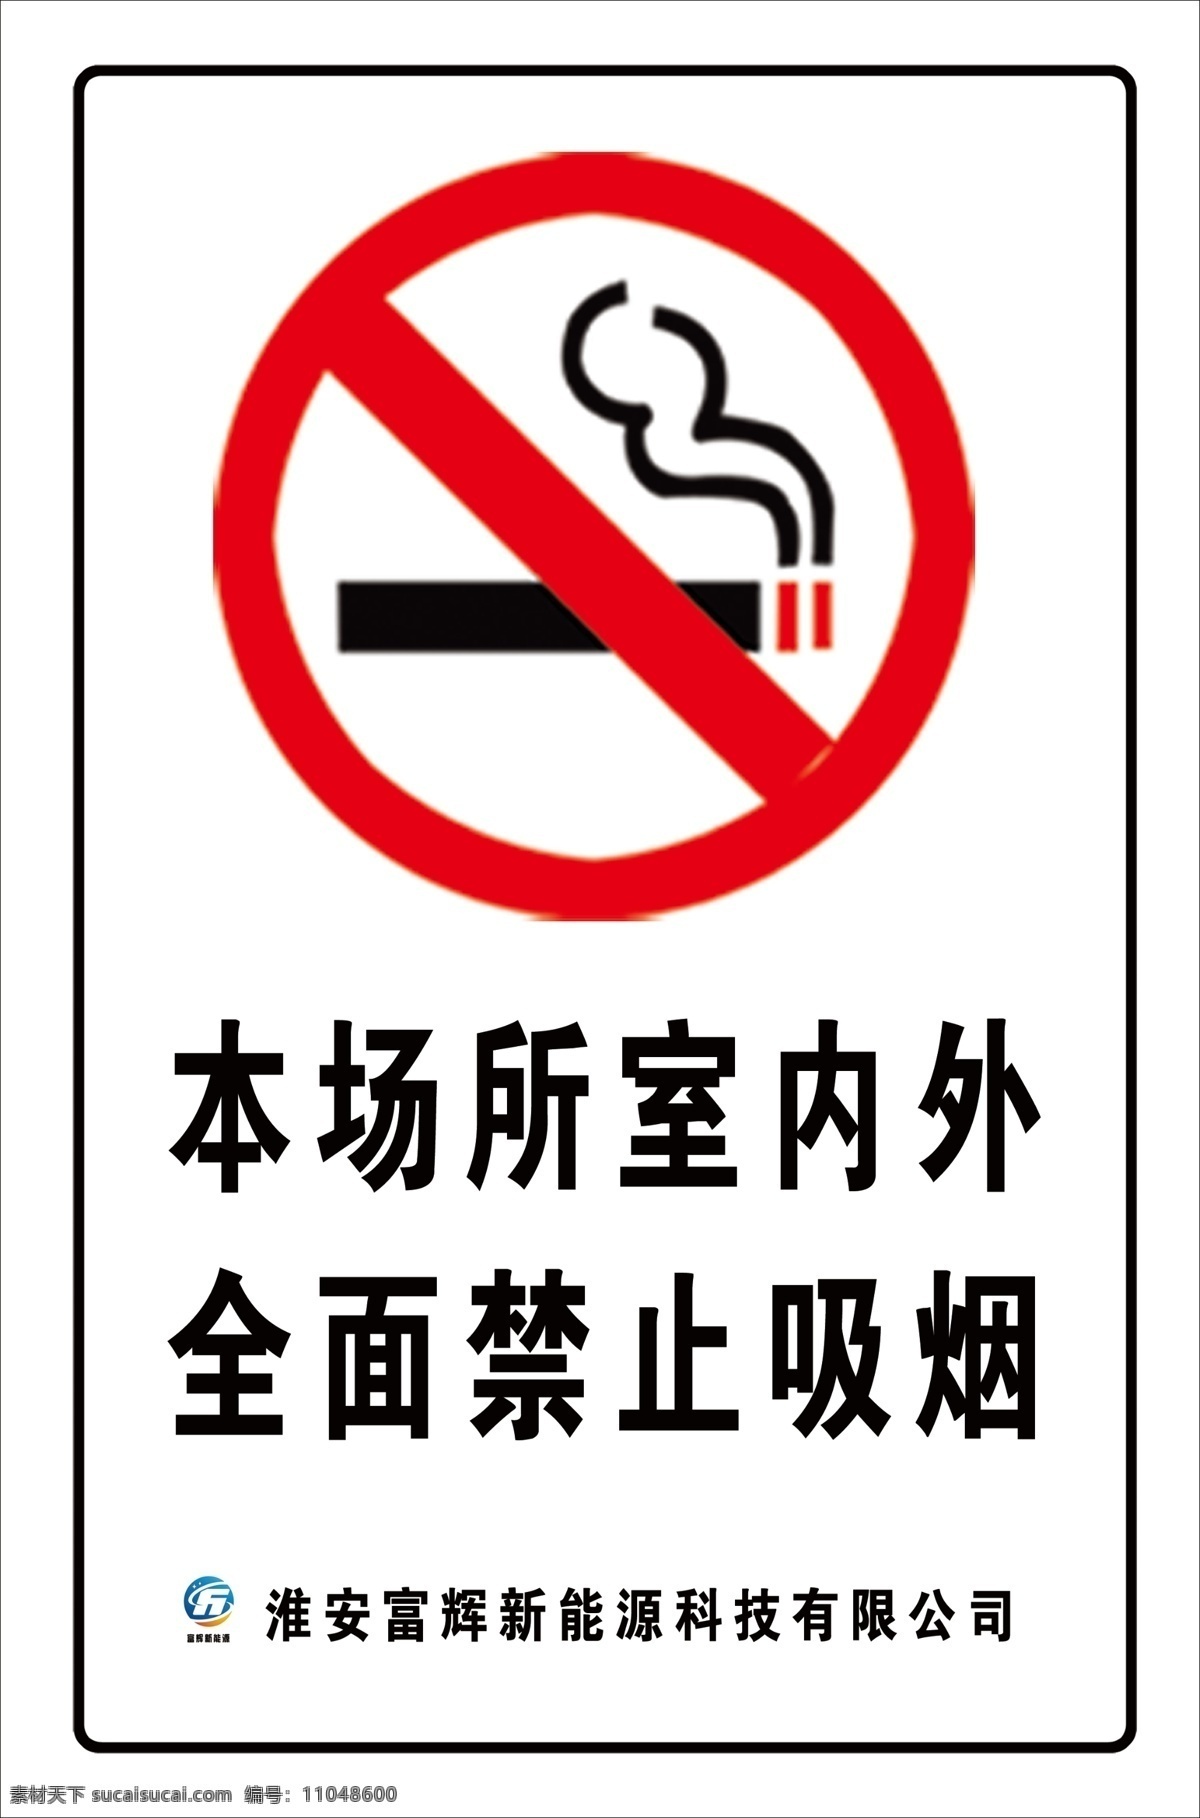 禁烟标志 本场所 室内外 全面禁止吸烟 白底黑字 车身贴